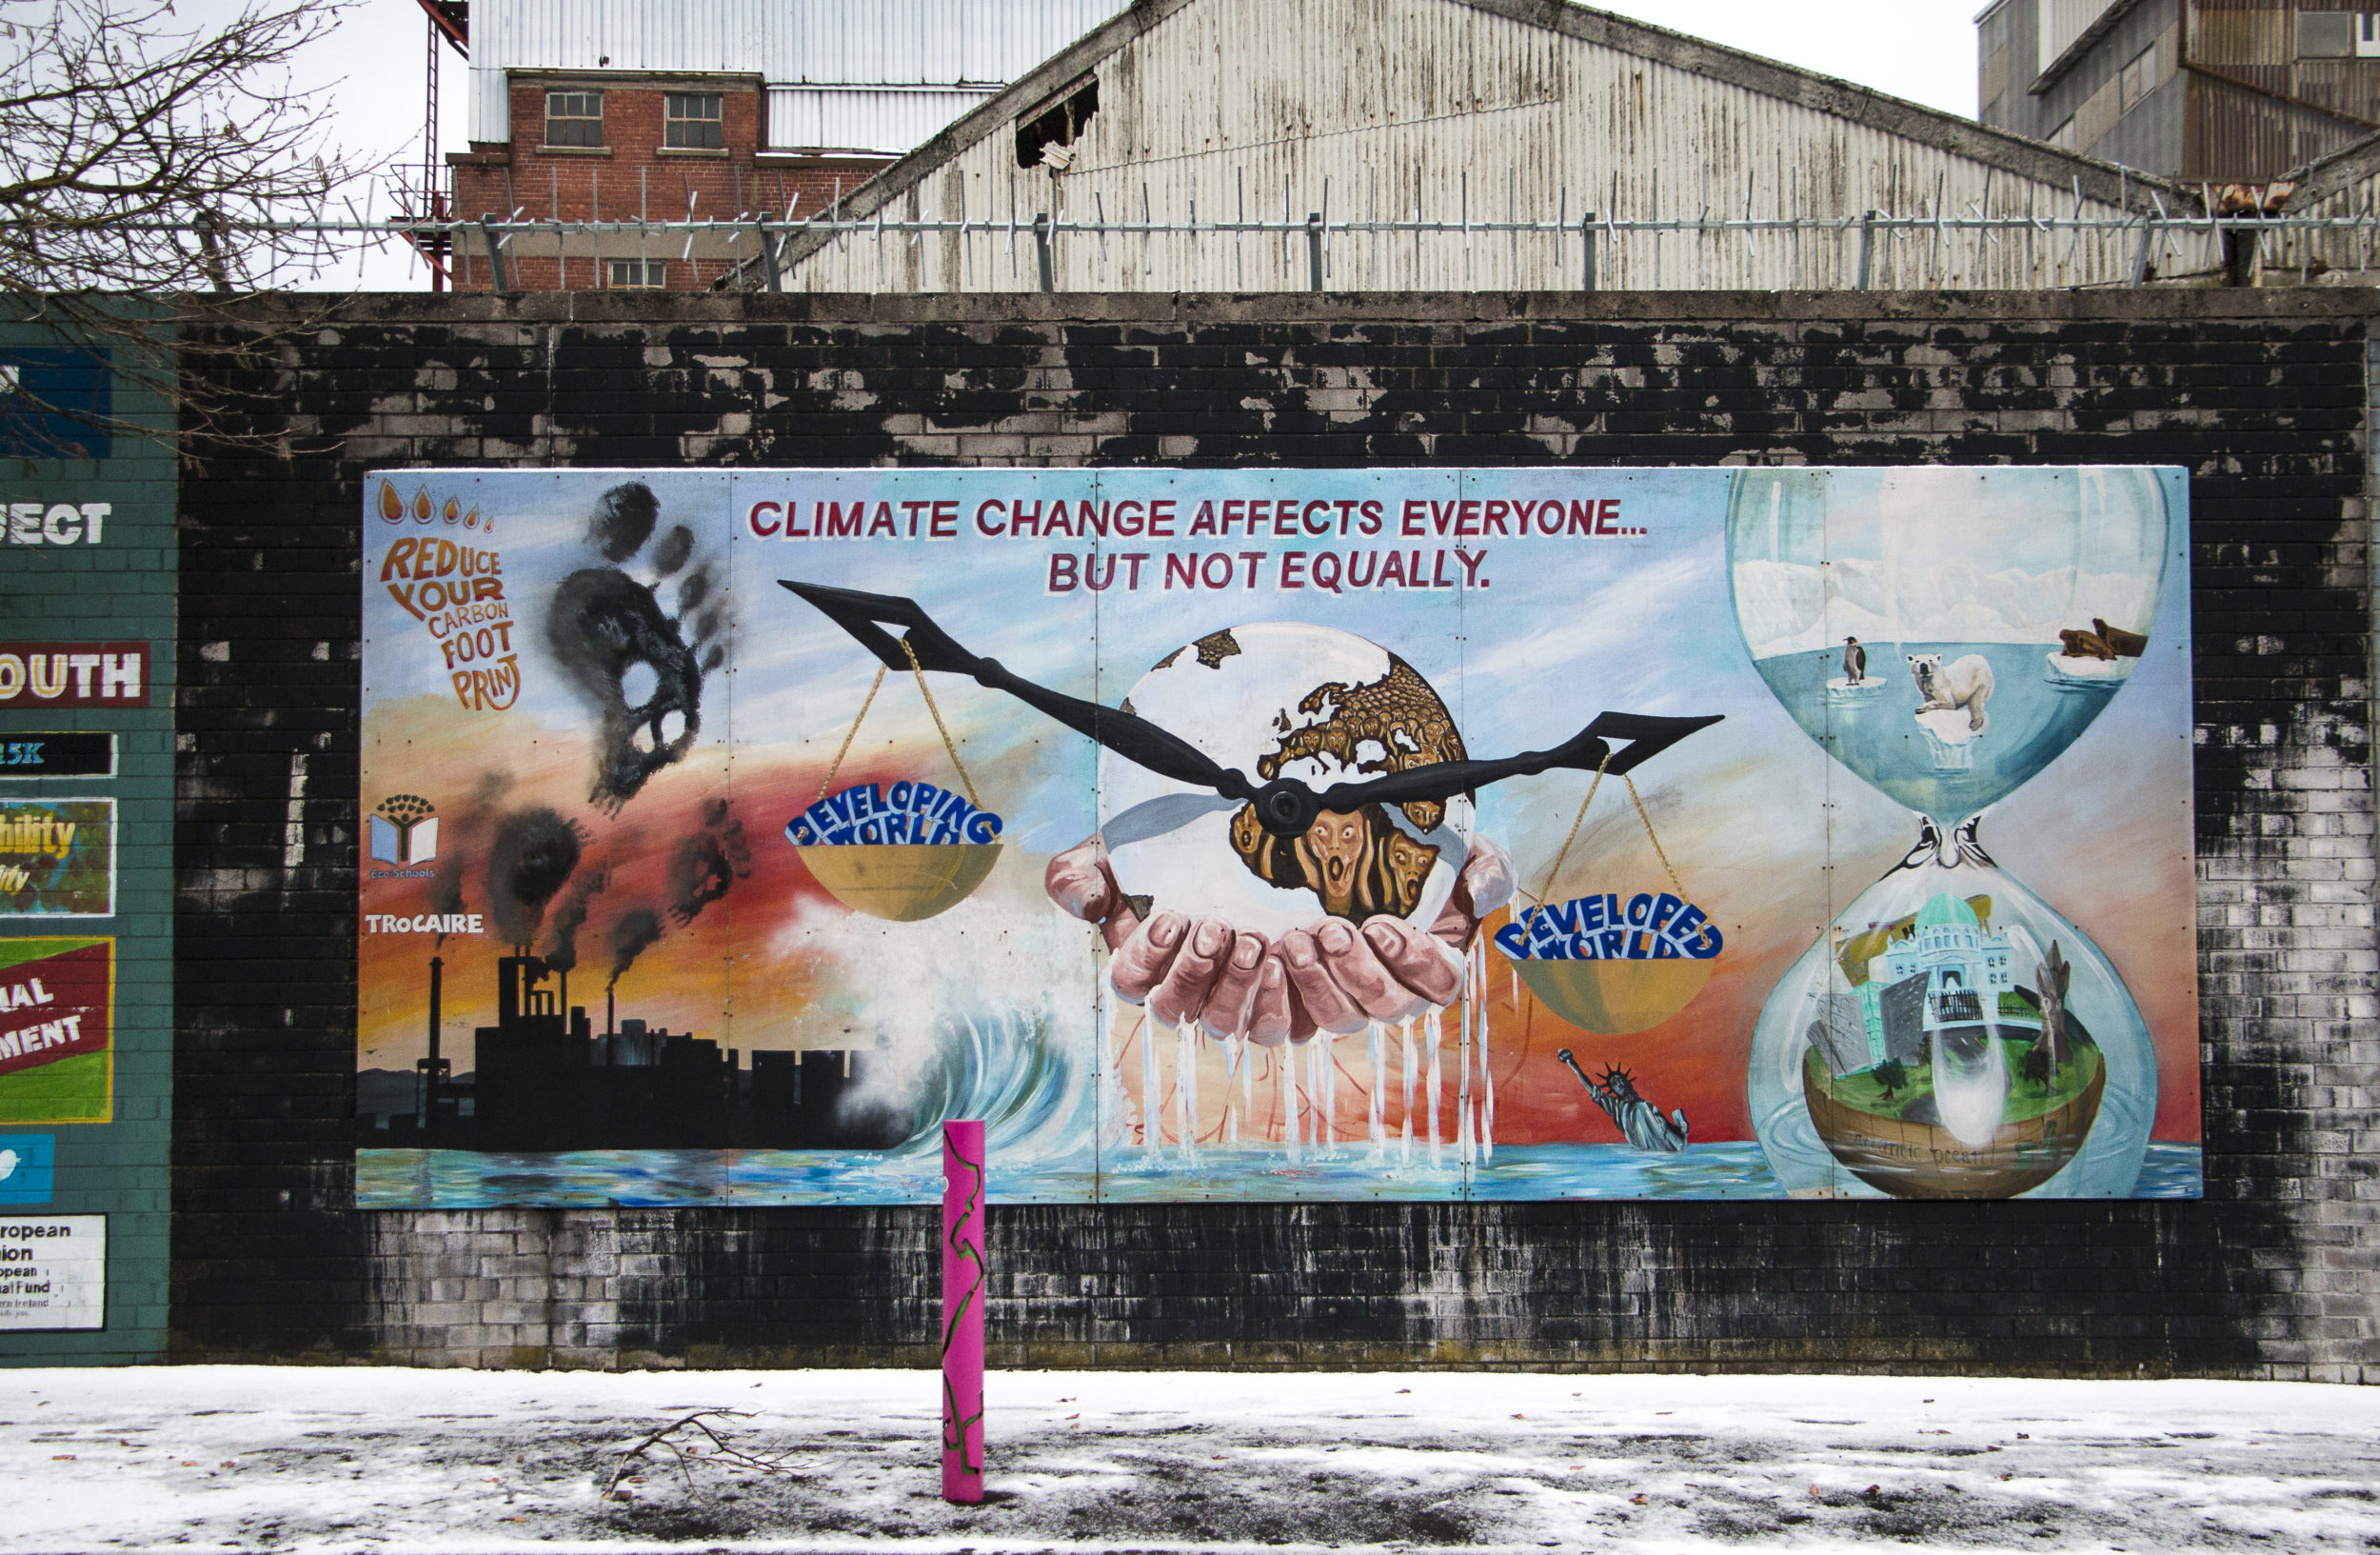 Belfastin poliittisessa katutaiteessa otetaan alati enemmän kantaa globaaleihin ilmiöihin, kuten ilmastonmuutokseen. Vanha kahtiajako menettää merkitystään, joskin hitaasti. 